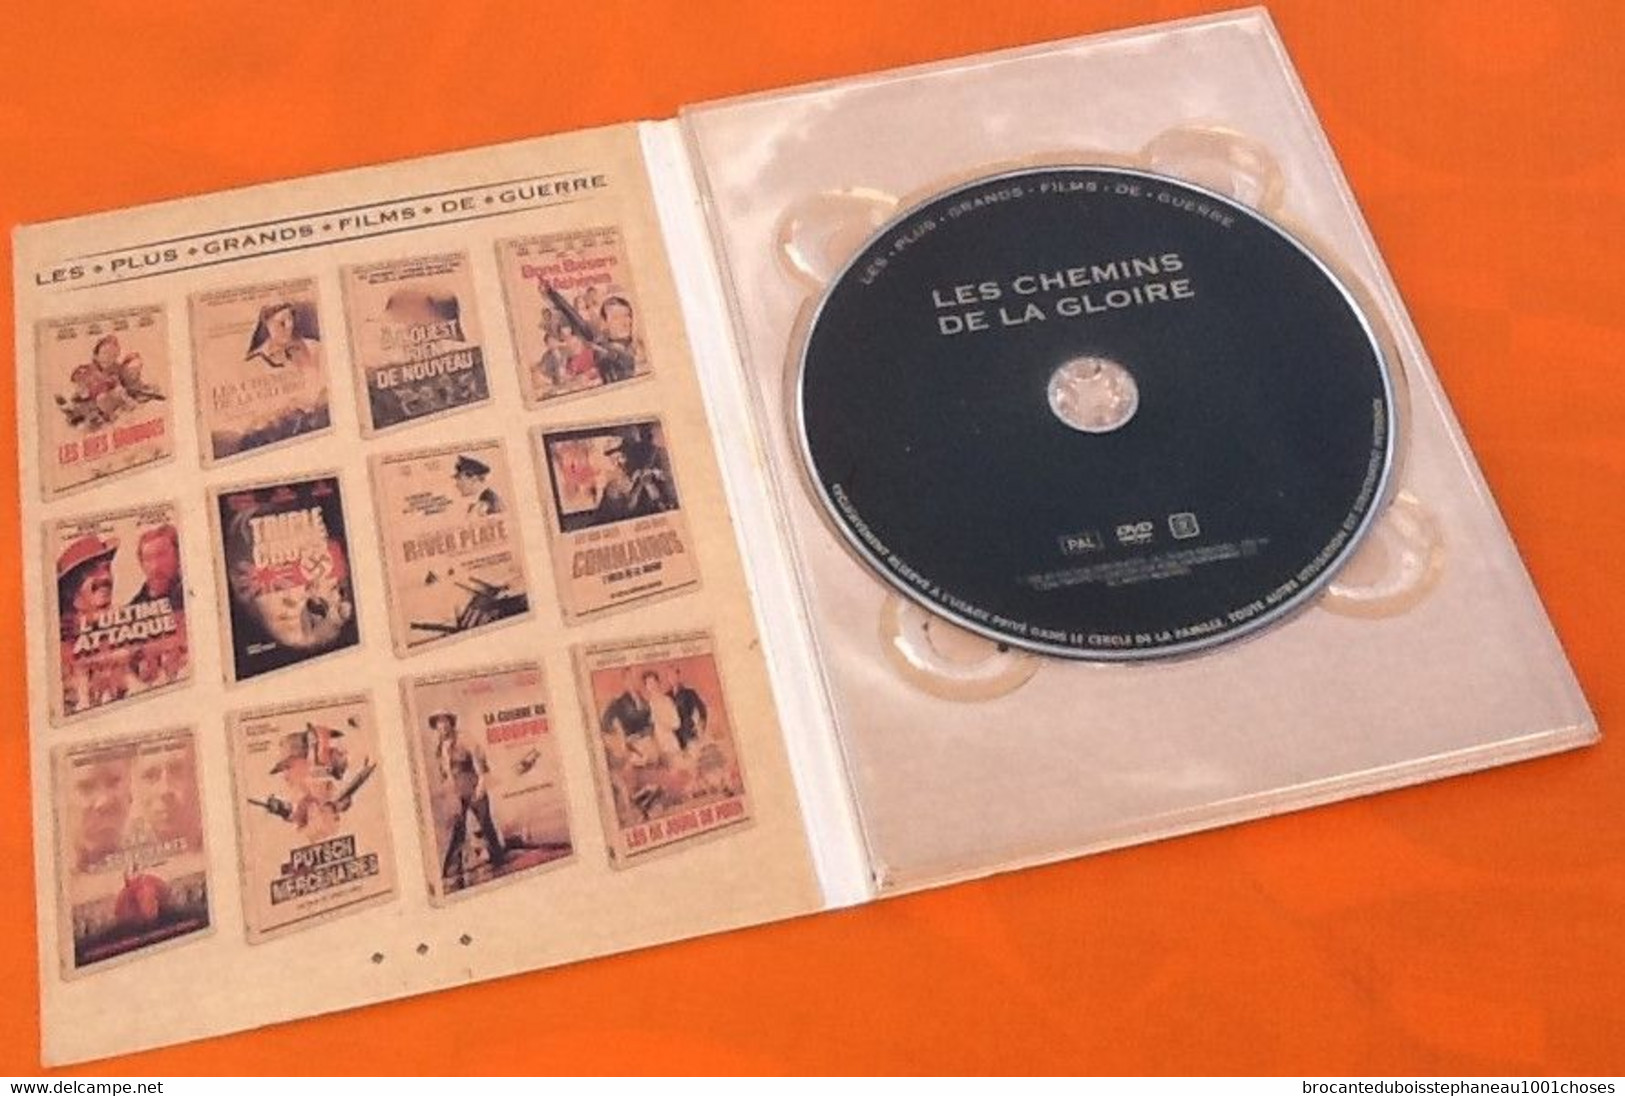 DVD  Les Chemins De La Gloire (2008)  De Howard Hawks  Avec Fredric March, Warner Baxter... - History